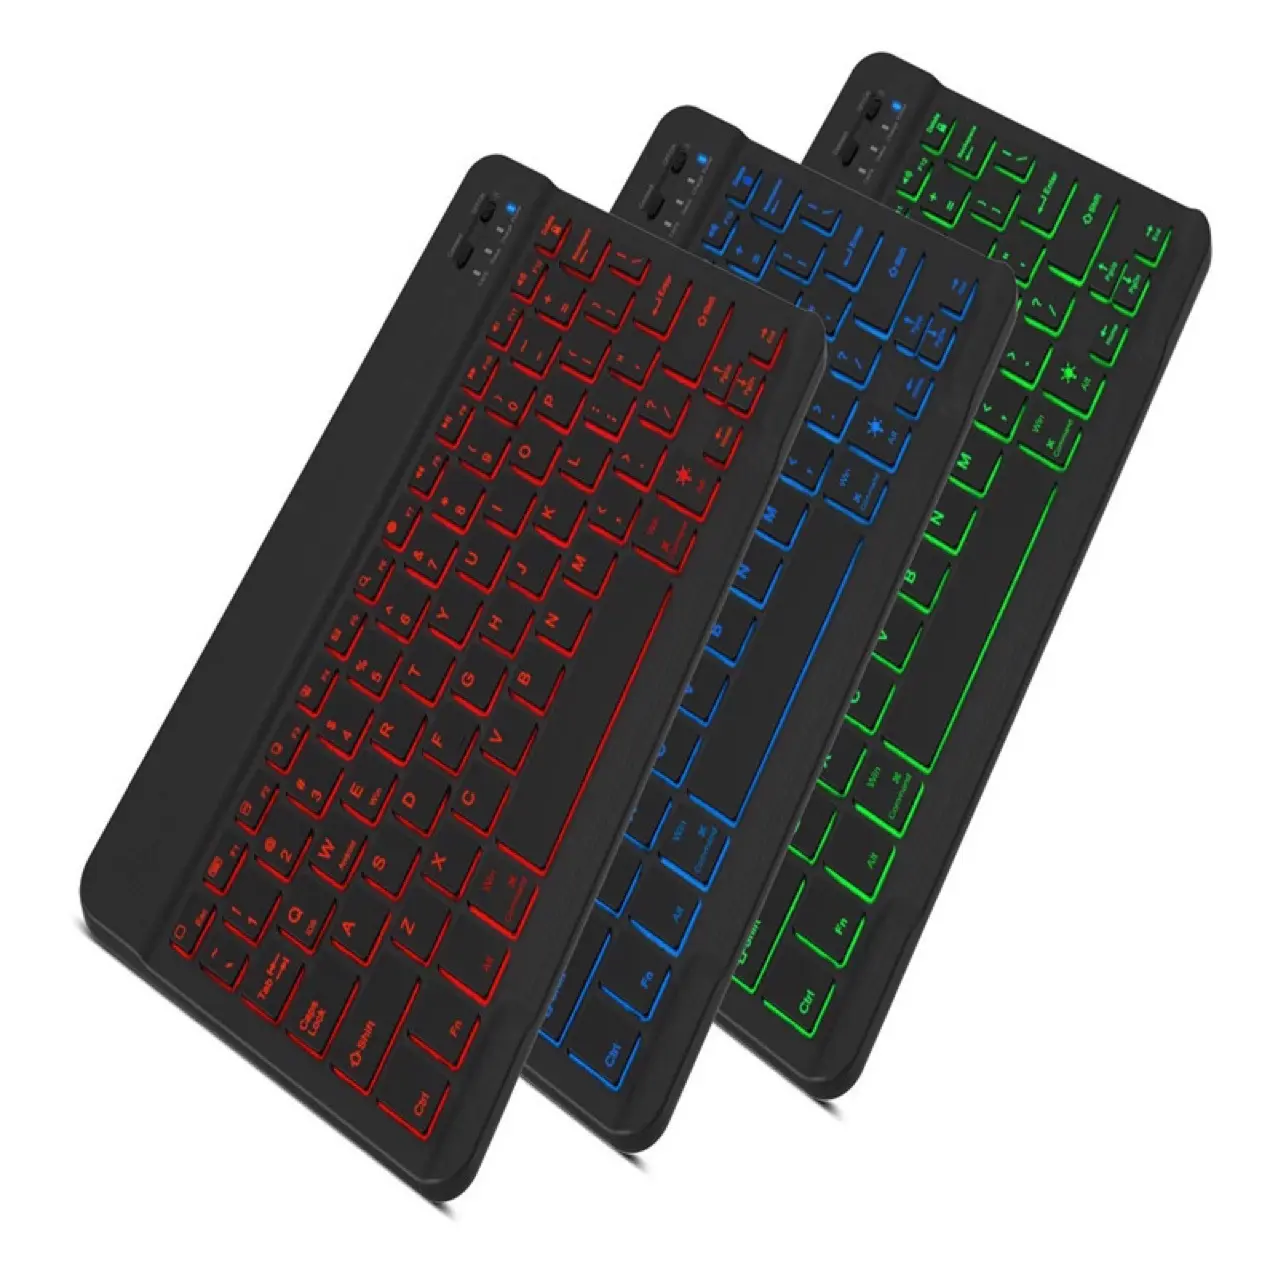 Tastiera RGB BT tastiera Wireless spagnola russa tastiere in gomma tastiere RGB ricaricabili per Laptop telefono ipad